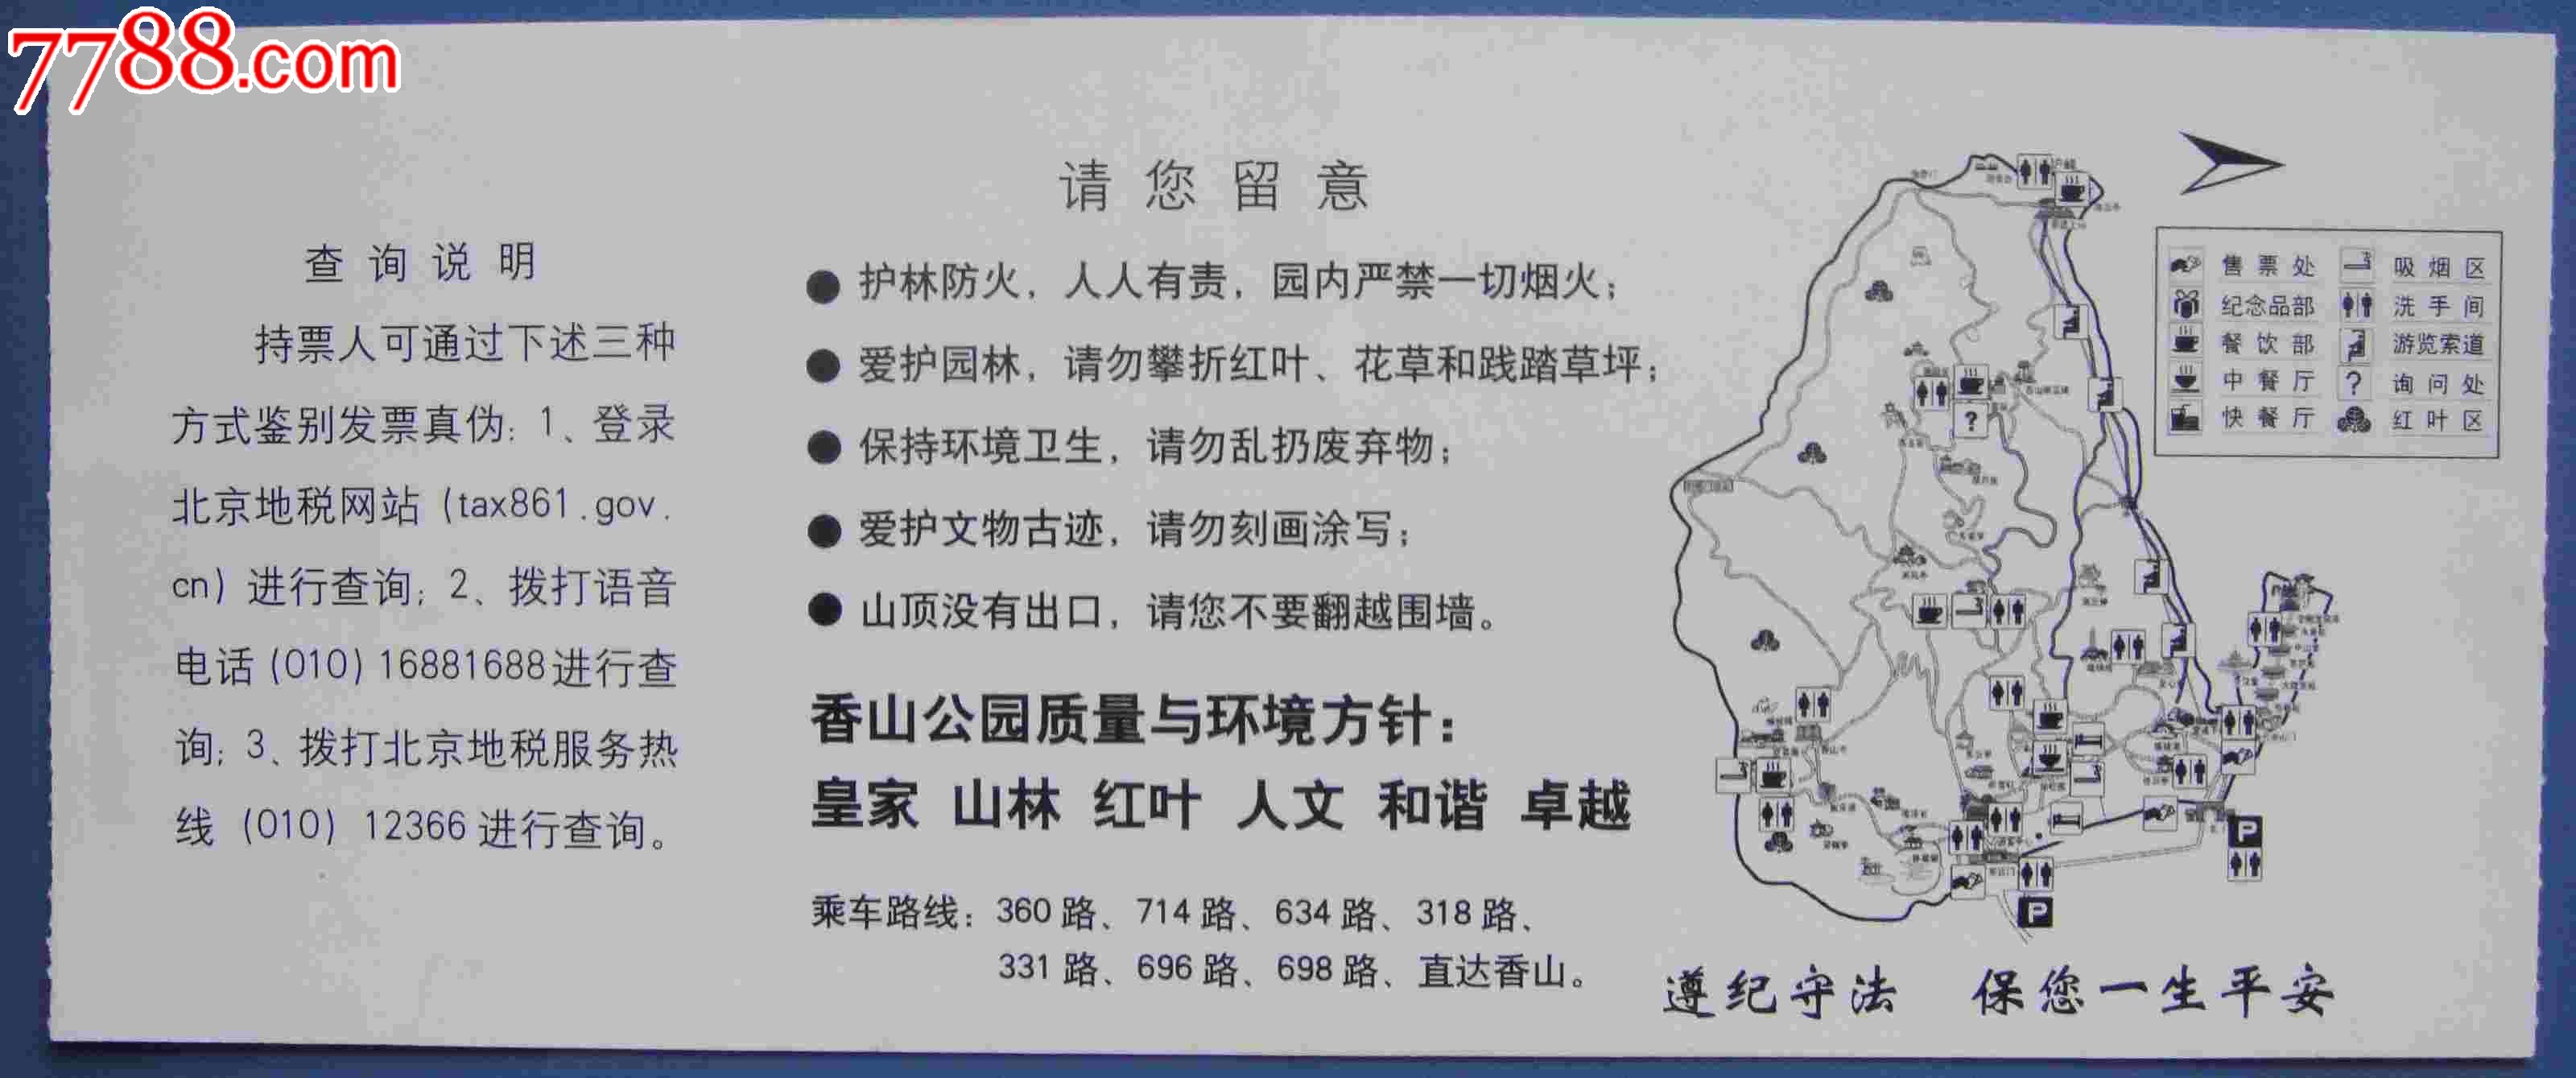 香山公园门票-价格:2元-se22586601-旅游景点